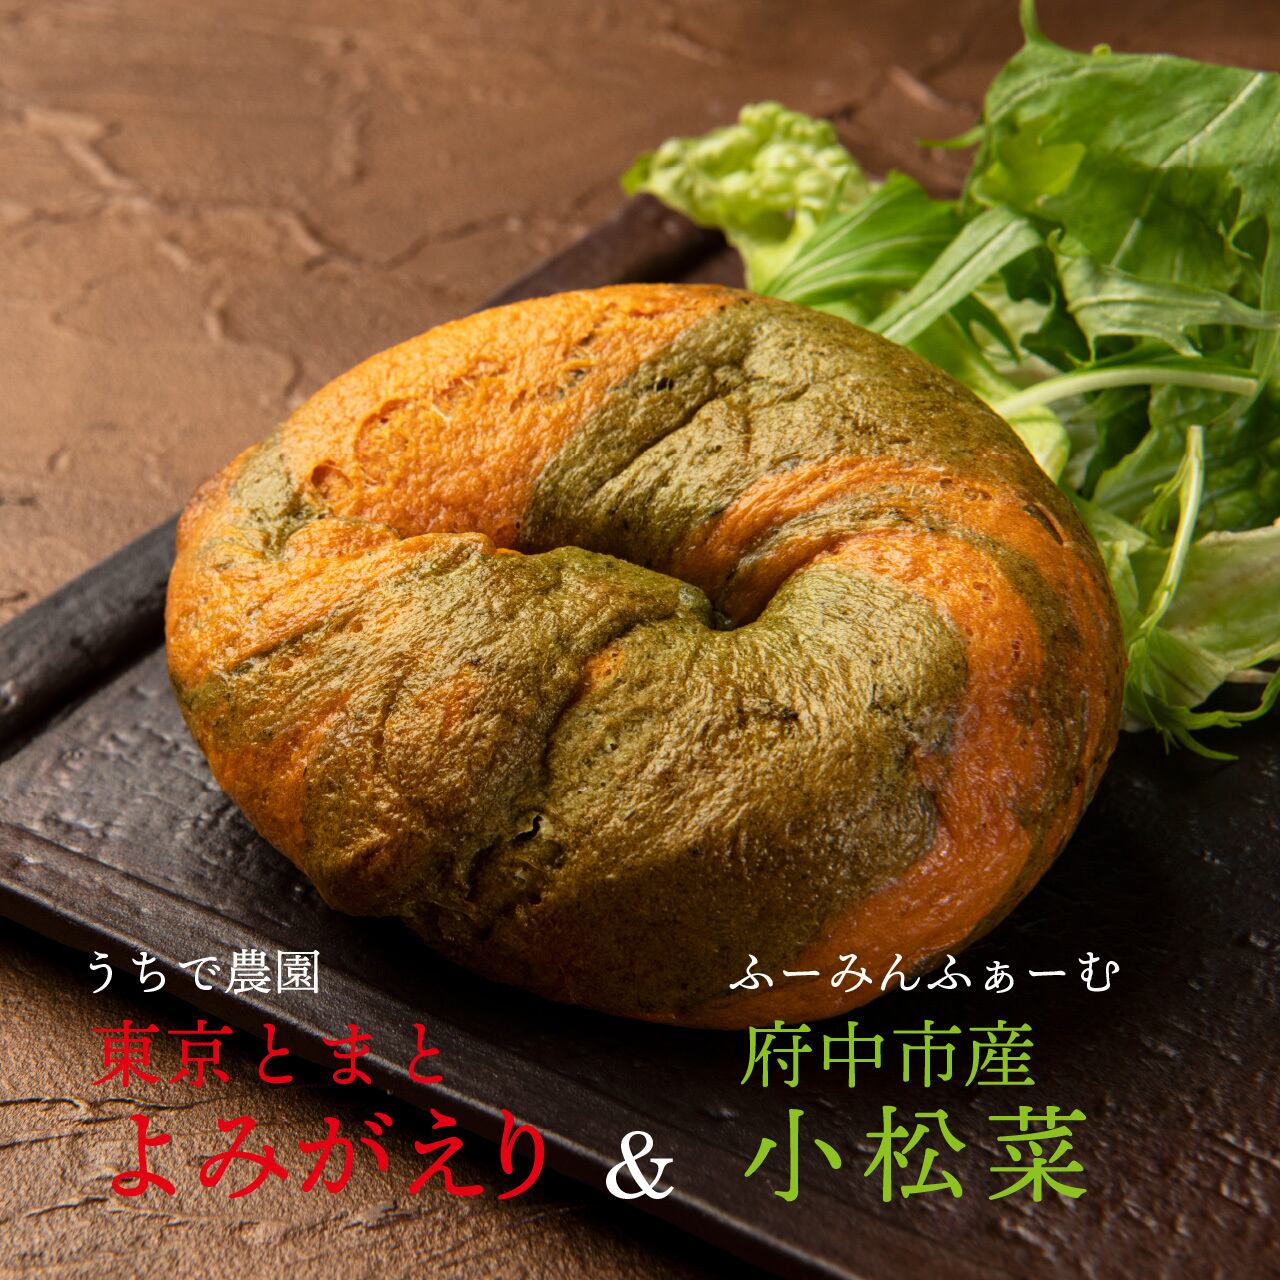 【お得なセット】府中野菜のベーグル3点セット×1